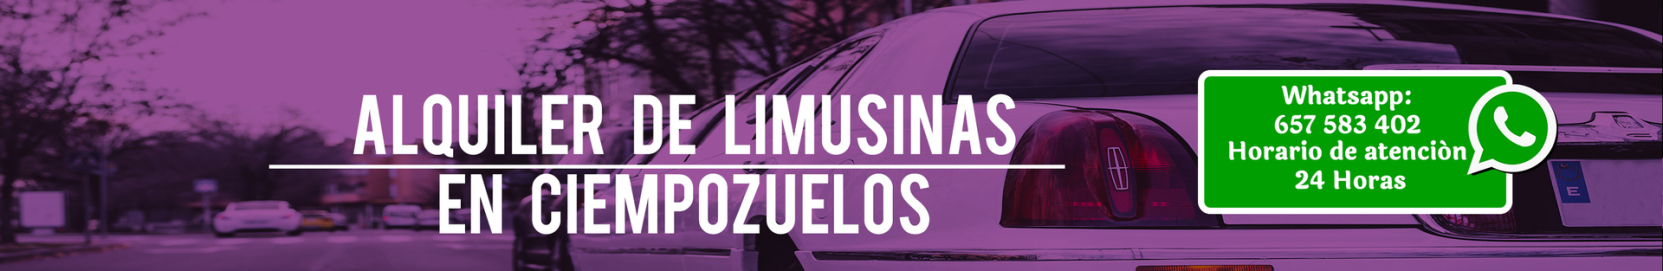 Alquiler de limusinas en Ciempozuelos